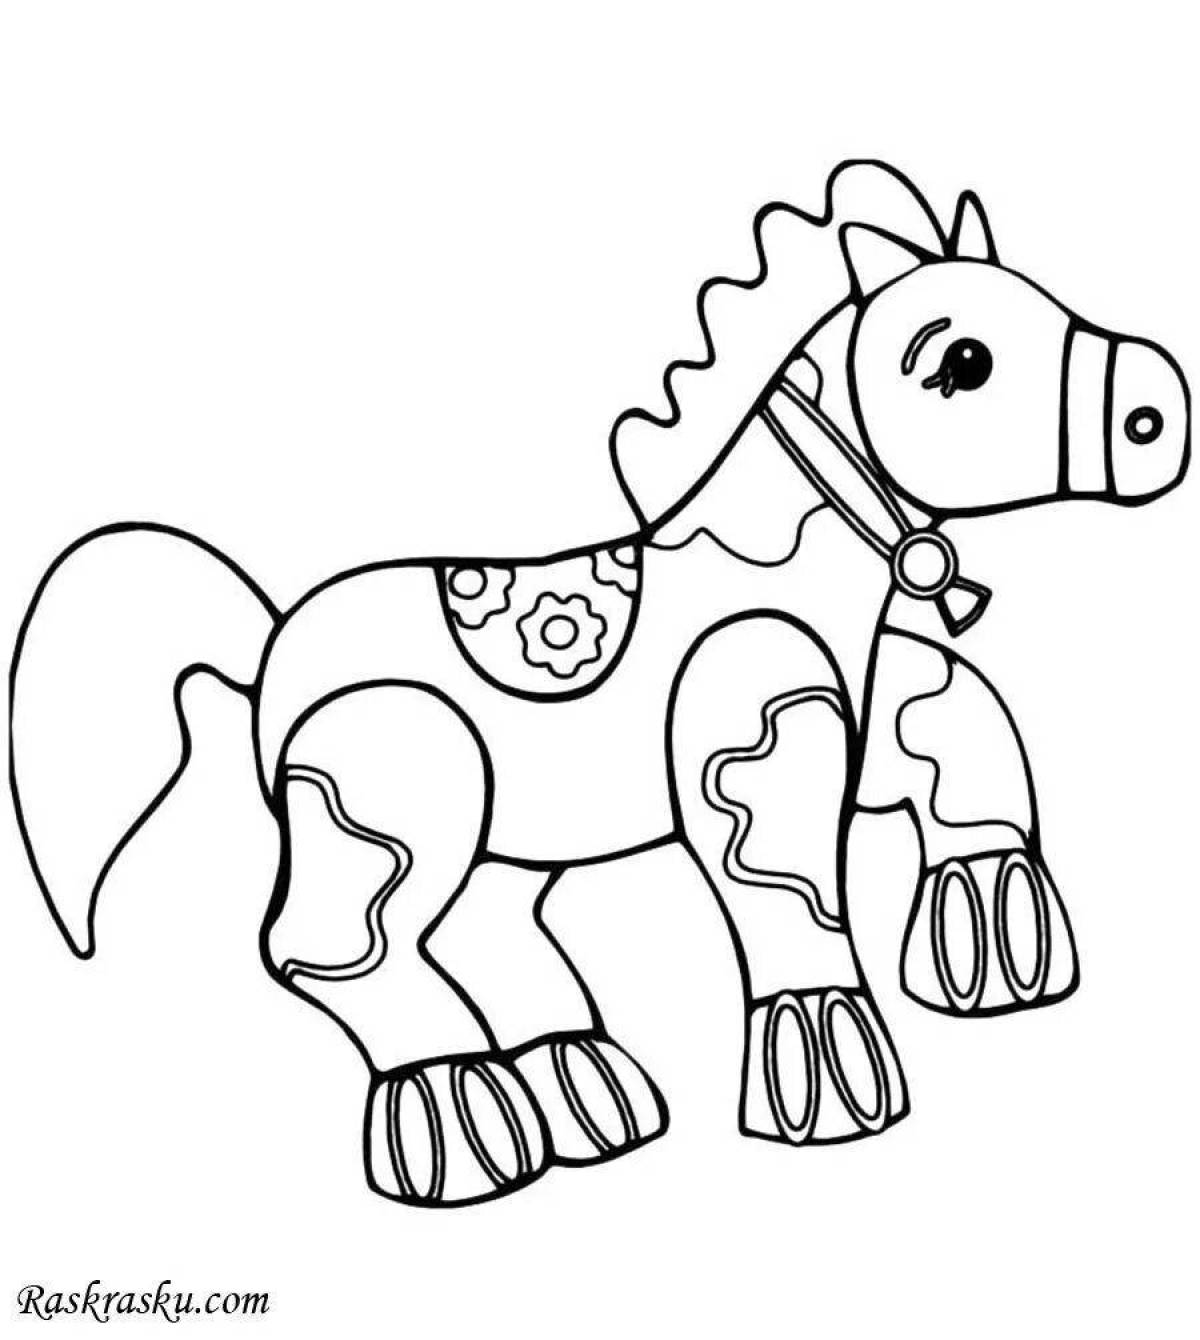 Забавная раскраска лошадь для детей 4-5 лет